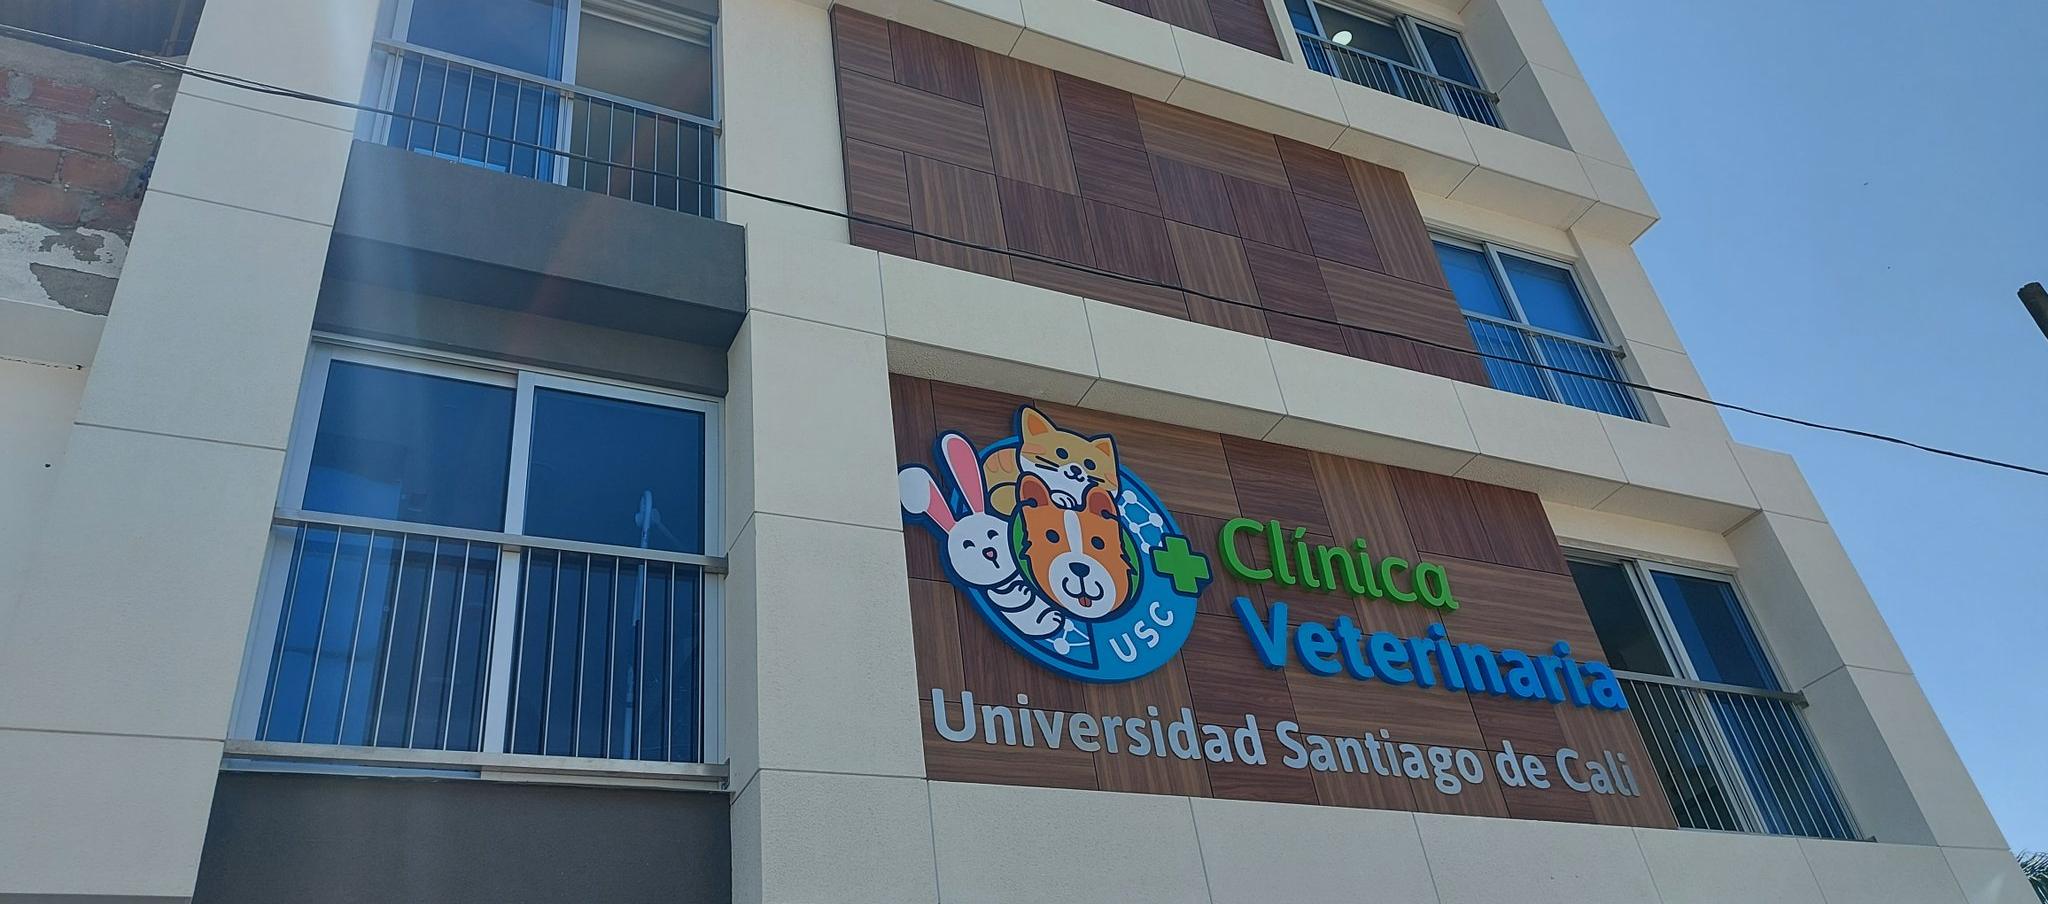 La clínica veterinaria inaugurada por la Universidad Santiago de Cali 